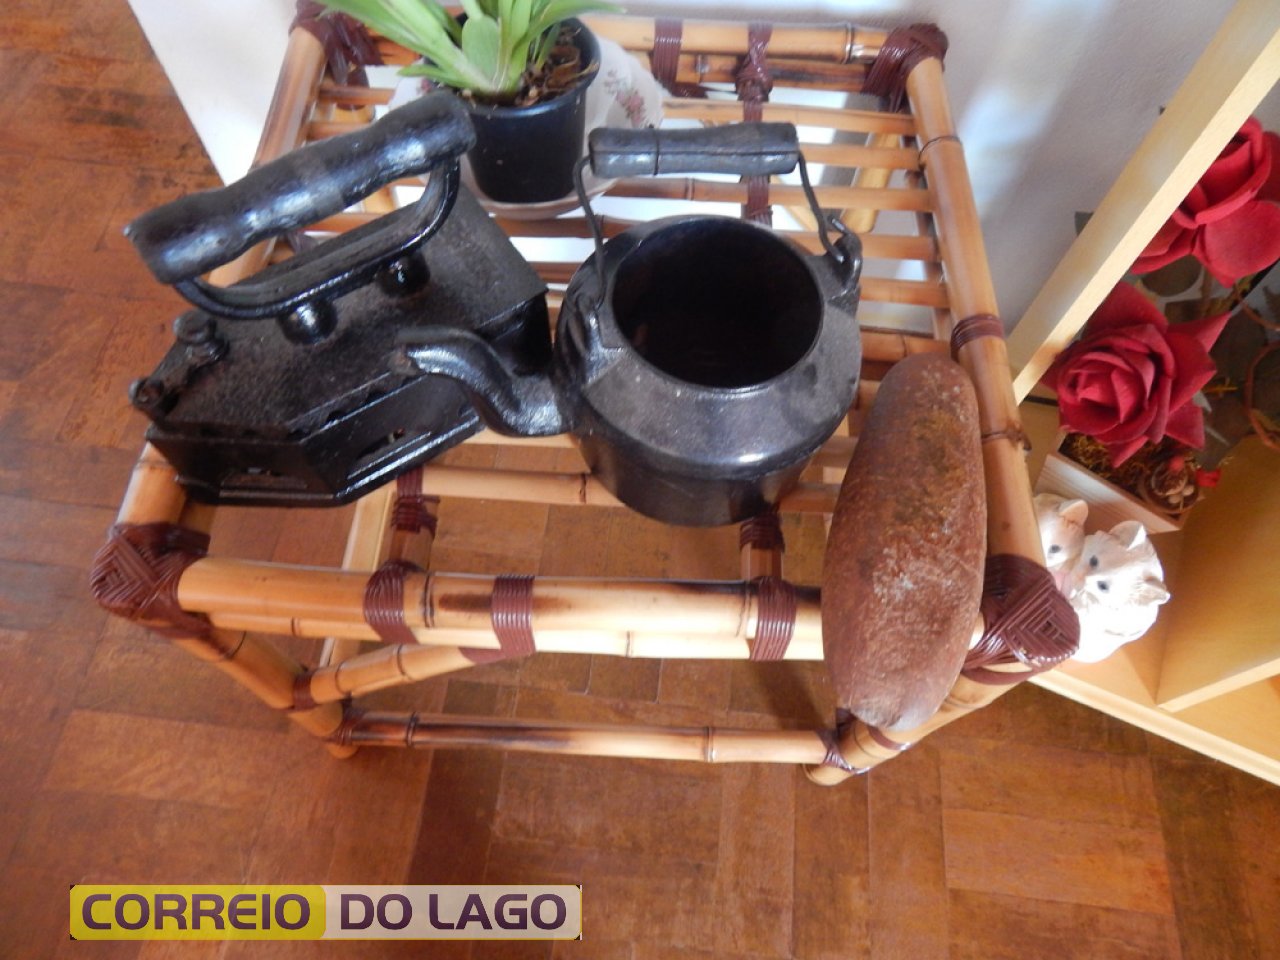 Observem  a direita da foto. Aparece um artefato indígena. Instrumento usado por eles  para cavar raizes, entre outros fins. Material achado pela família de Marino na L. Guarani